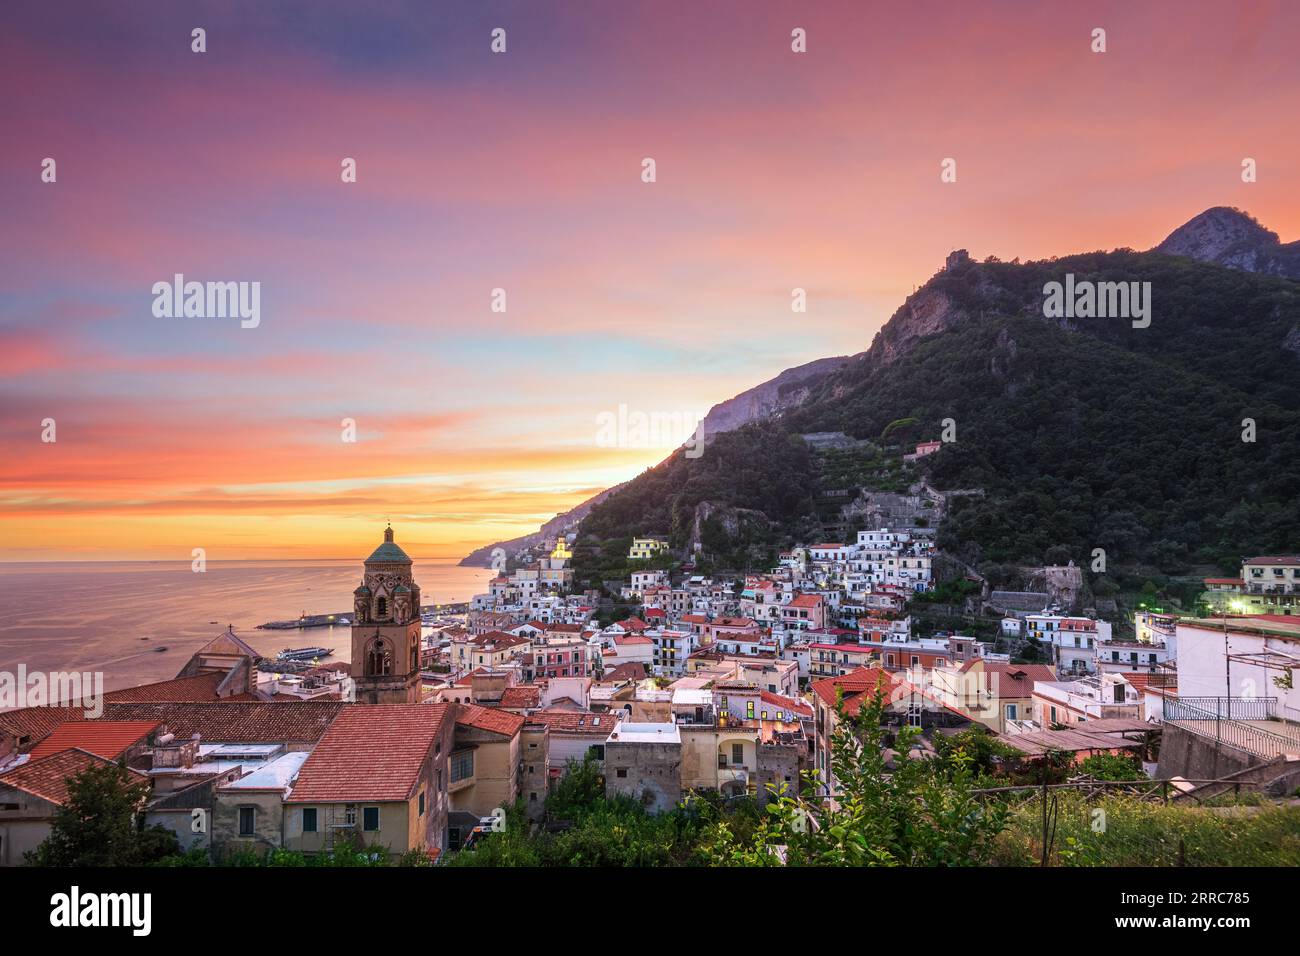 Amalfi, Italy on the Amalfi coast at dusk. Stock Photo